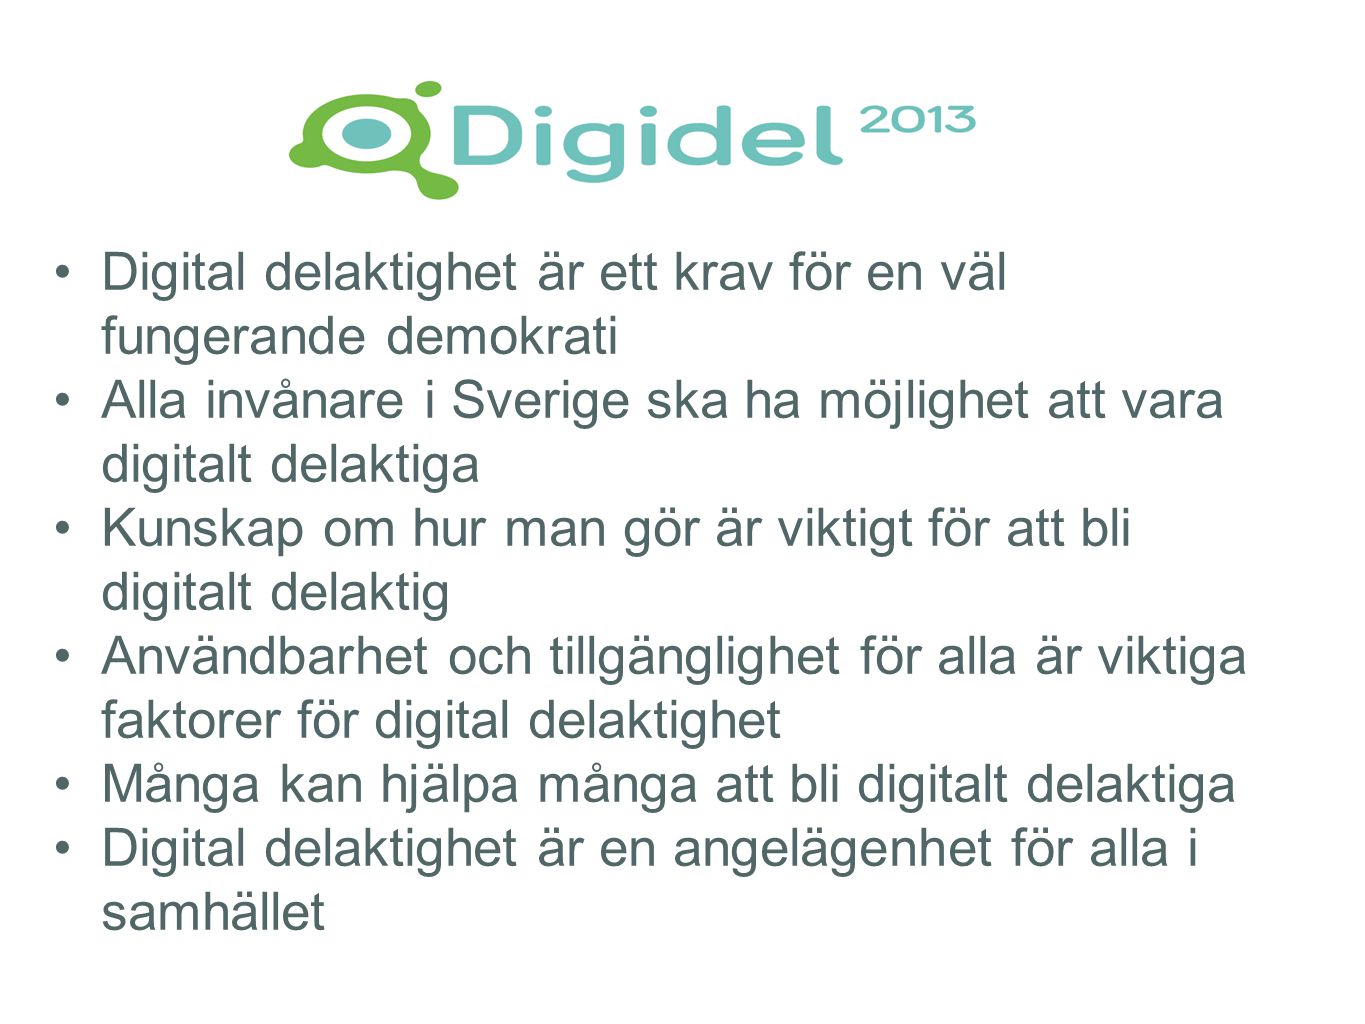 •Digital delaktighet är ett krav för en väl fungerande demokrati •Alla invånare i Sverige ska ha möjlighet att vara digitalt delaktiga •Kunskap om hur man gör är viktigt för att bli digitalt delaktig •Användbarhet och tillgänglighet för alla är viktiga faktorer för digital delaktighet •Många kan hjälpa många att bli digitalt delaktiga •Digital delaktighet är en angelägenhet för alla i samhället